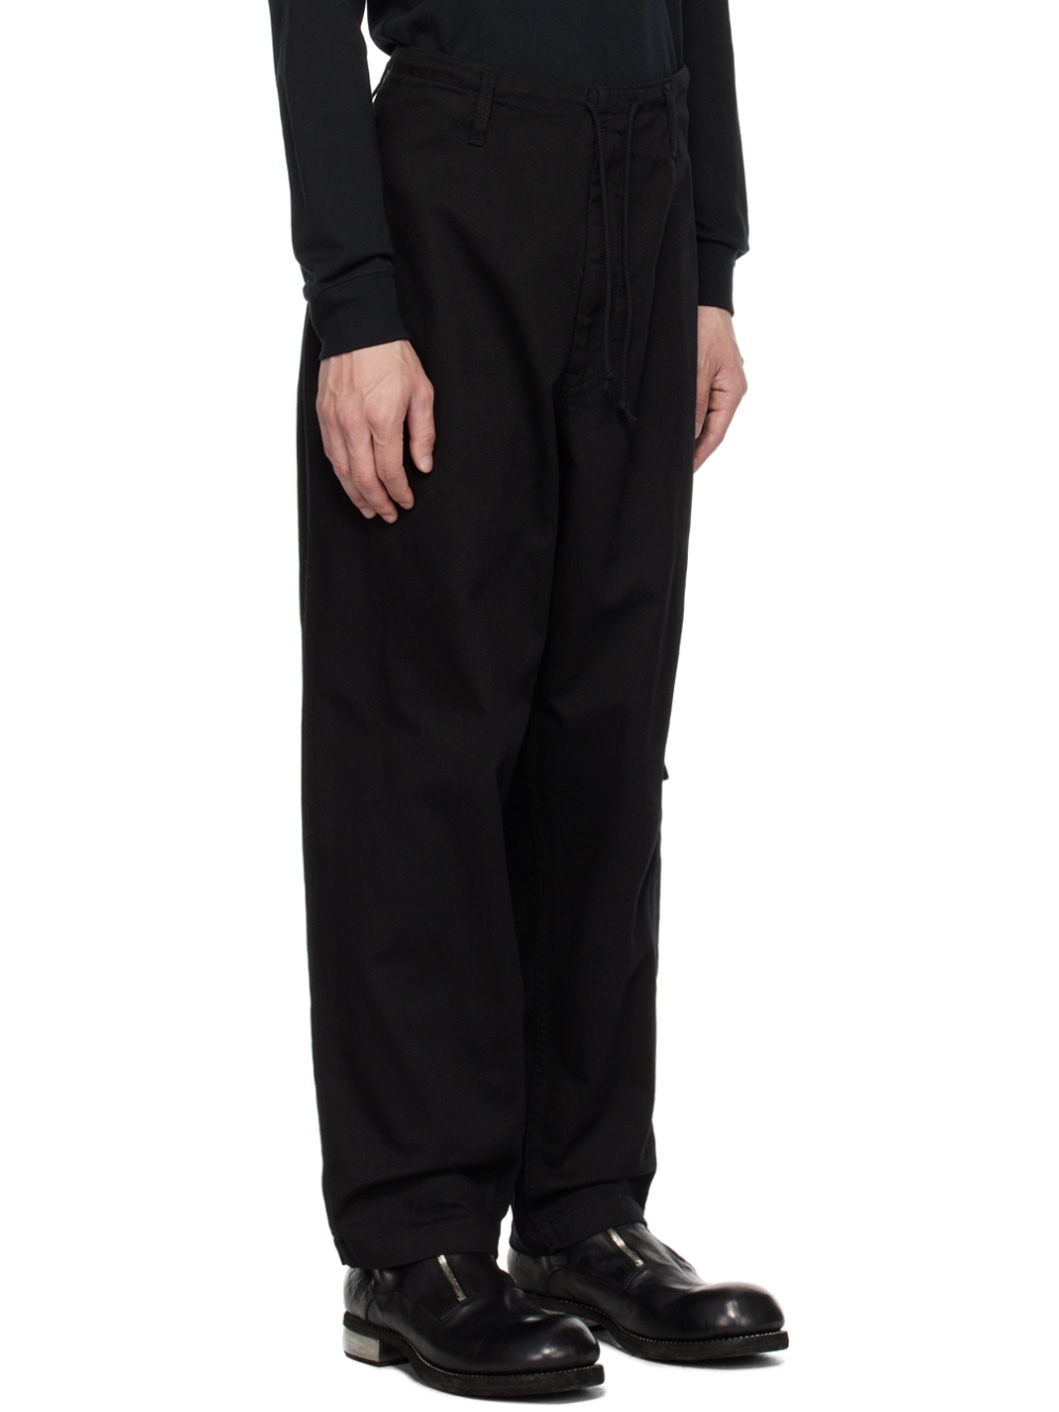 Yohji Yamamoto Black Drawstring Trousers